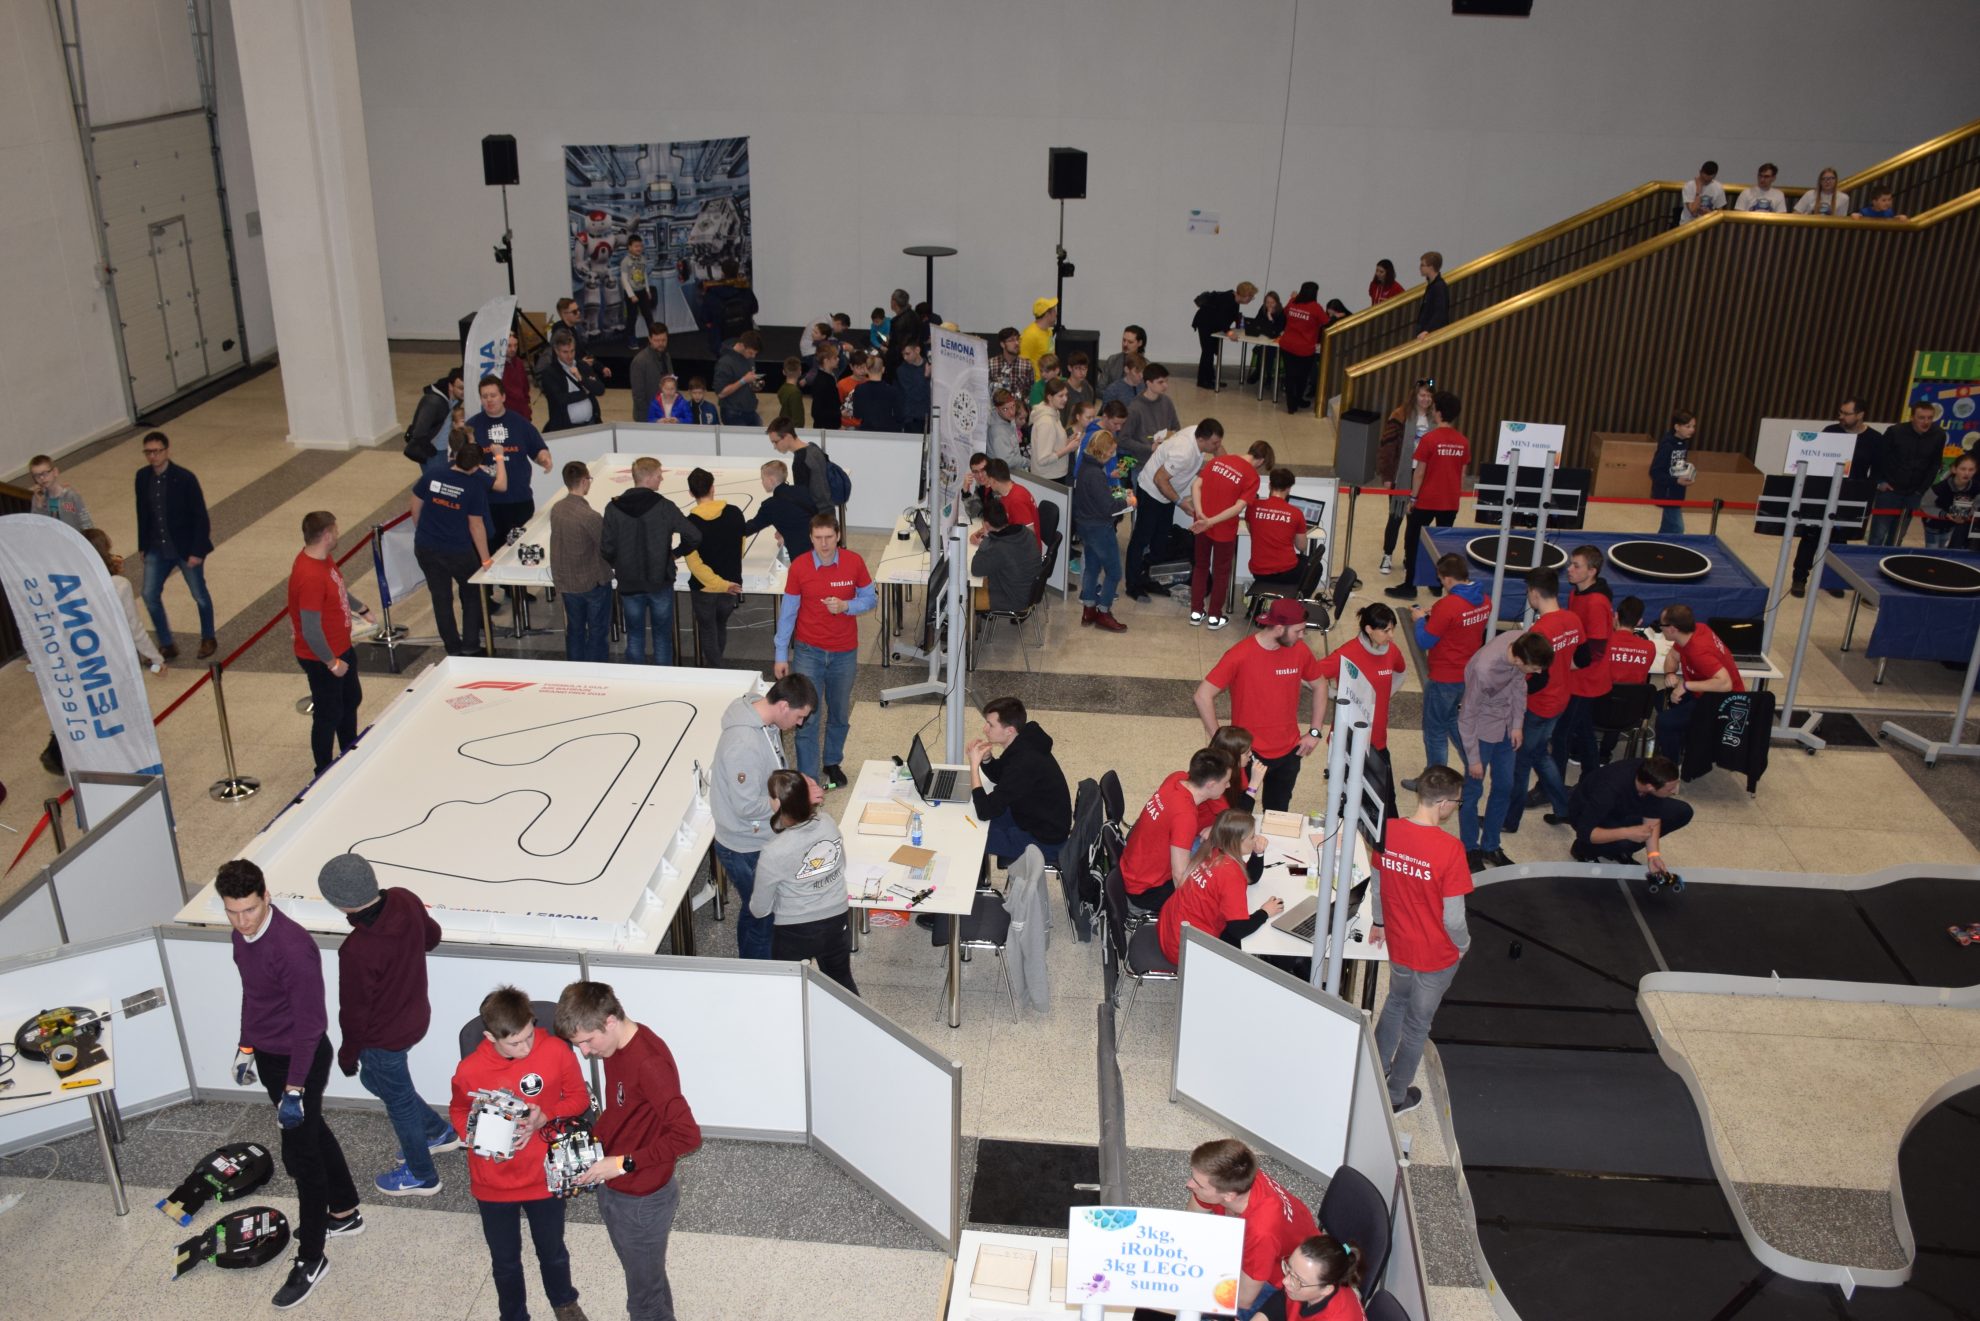 Savaitgalį Vilniuje Lietuvos parodų ir kongresų centre „Litexpo“ vyko jaunųjų išradėjų varžybos „Kosminė stotis: Robotiada 2019“. Nacionalinėse First Lego League (FLL) ir FLL Junior varžybose varžėsi panevėžiečių moksleivių komandos iš Juozo Balčikonio, „Minties“ gimnazijų, Rožyno, „Vilties“ bei „Saulėtekio“ progimnazijų. Šiemet FLL varžybų tema – kosmosas, FLL Junior – misija mėnulis.